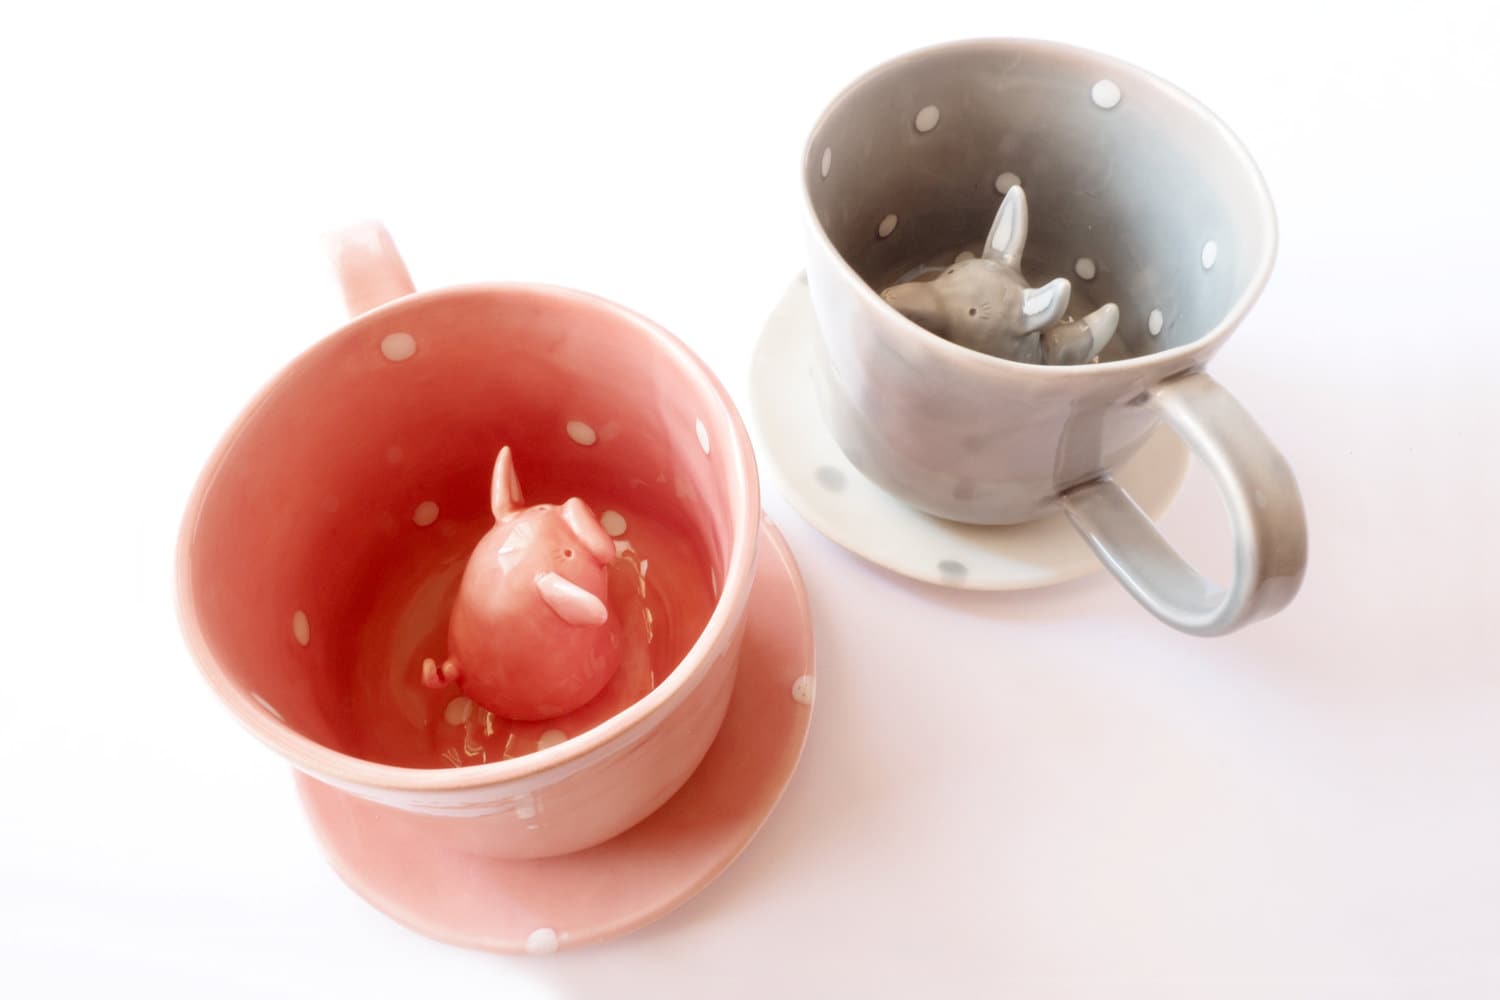 Cypress Home Pretty Pink Pig Ceramic Travel Coffee Mug - 17 oz